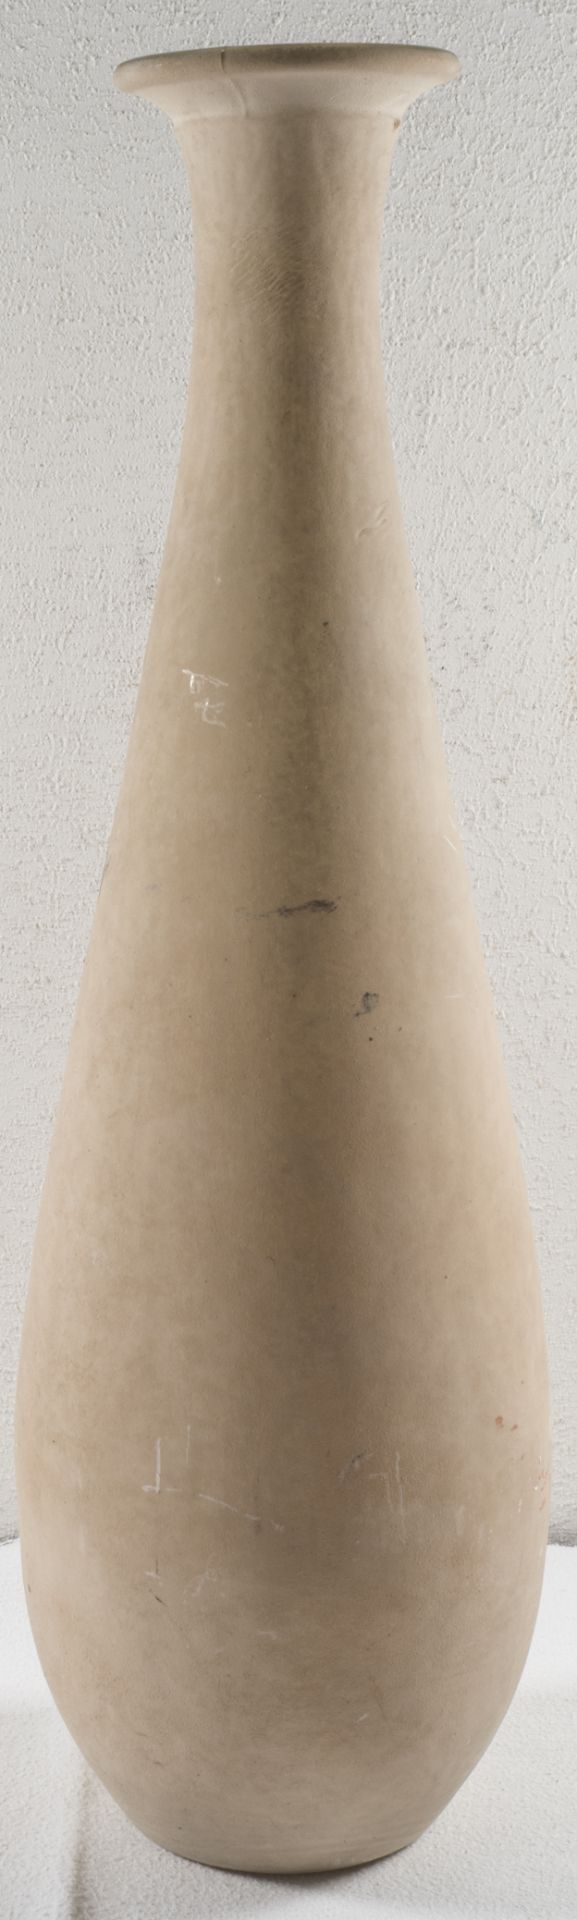 Glasvase, mit irdischer Farbe bemalt. Höhe: ca. 41 cm